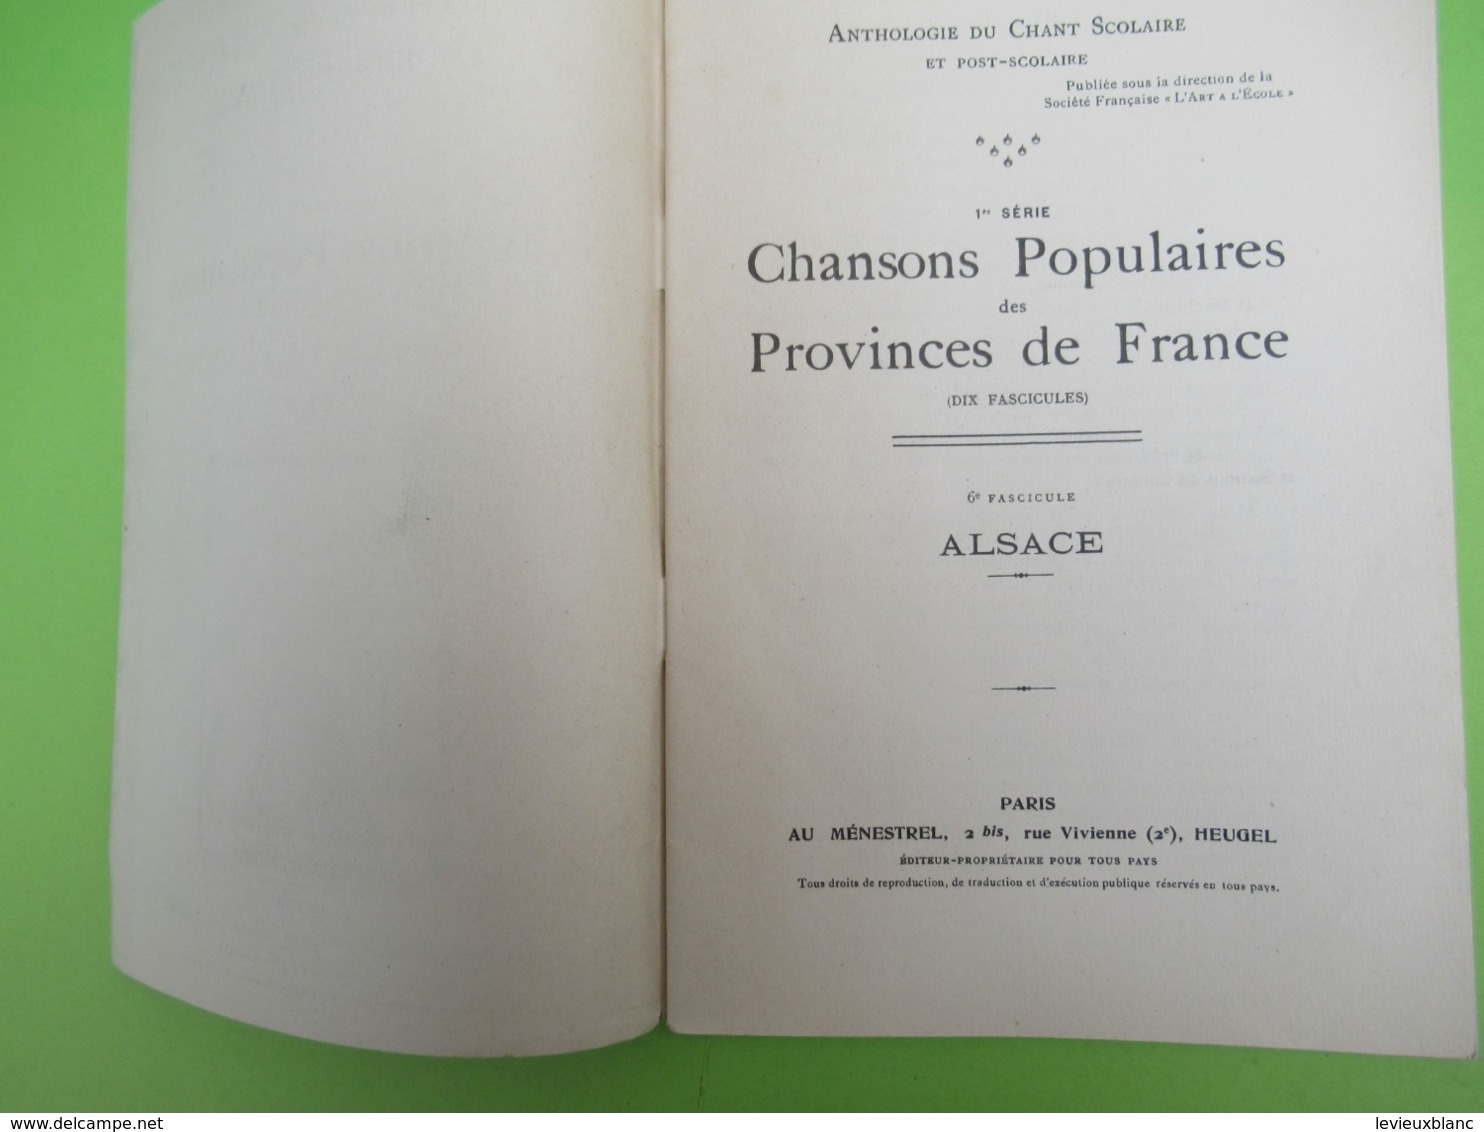 Livre /Anthologie Du Chant Scolaire Et Post-Scolaire/Chansons Populaires Des Provinces De France.ALSACE/1926    PART276 - Música